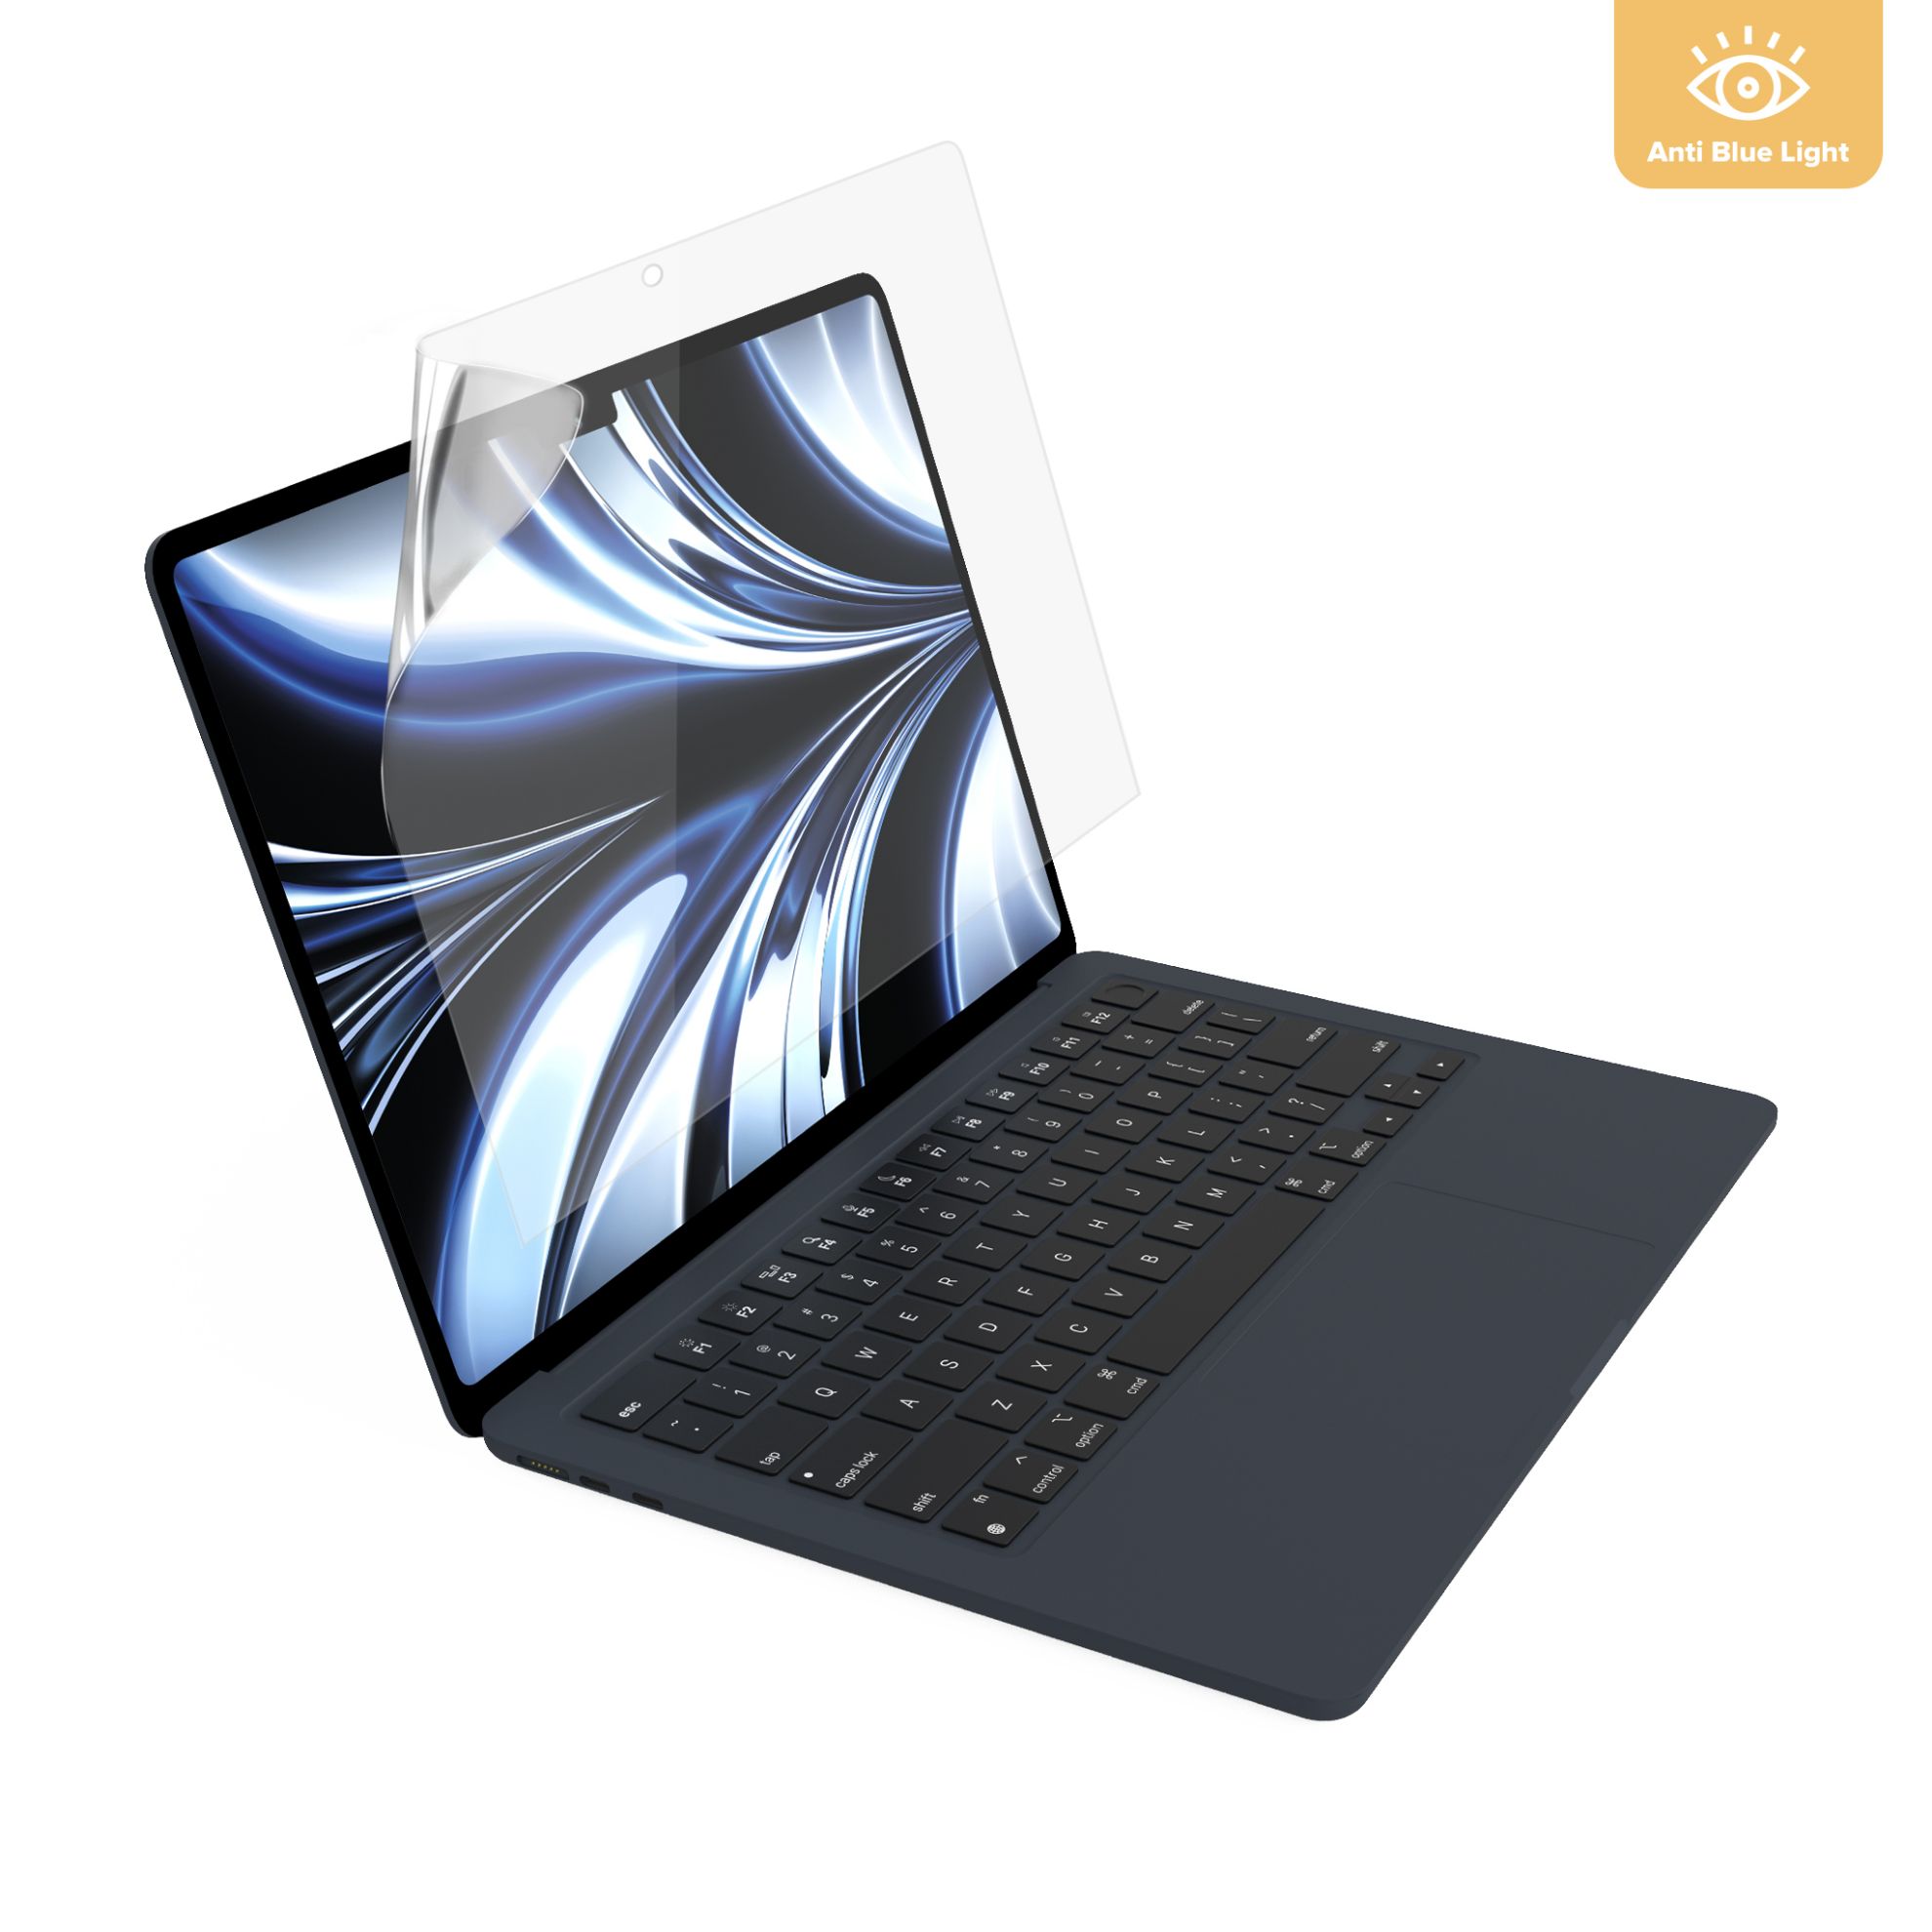 Dán Skin Laptop Macbook theo yêu cầu đẹp tốt nhất HOT giá rẻ